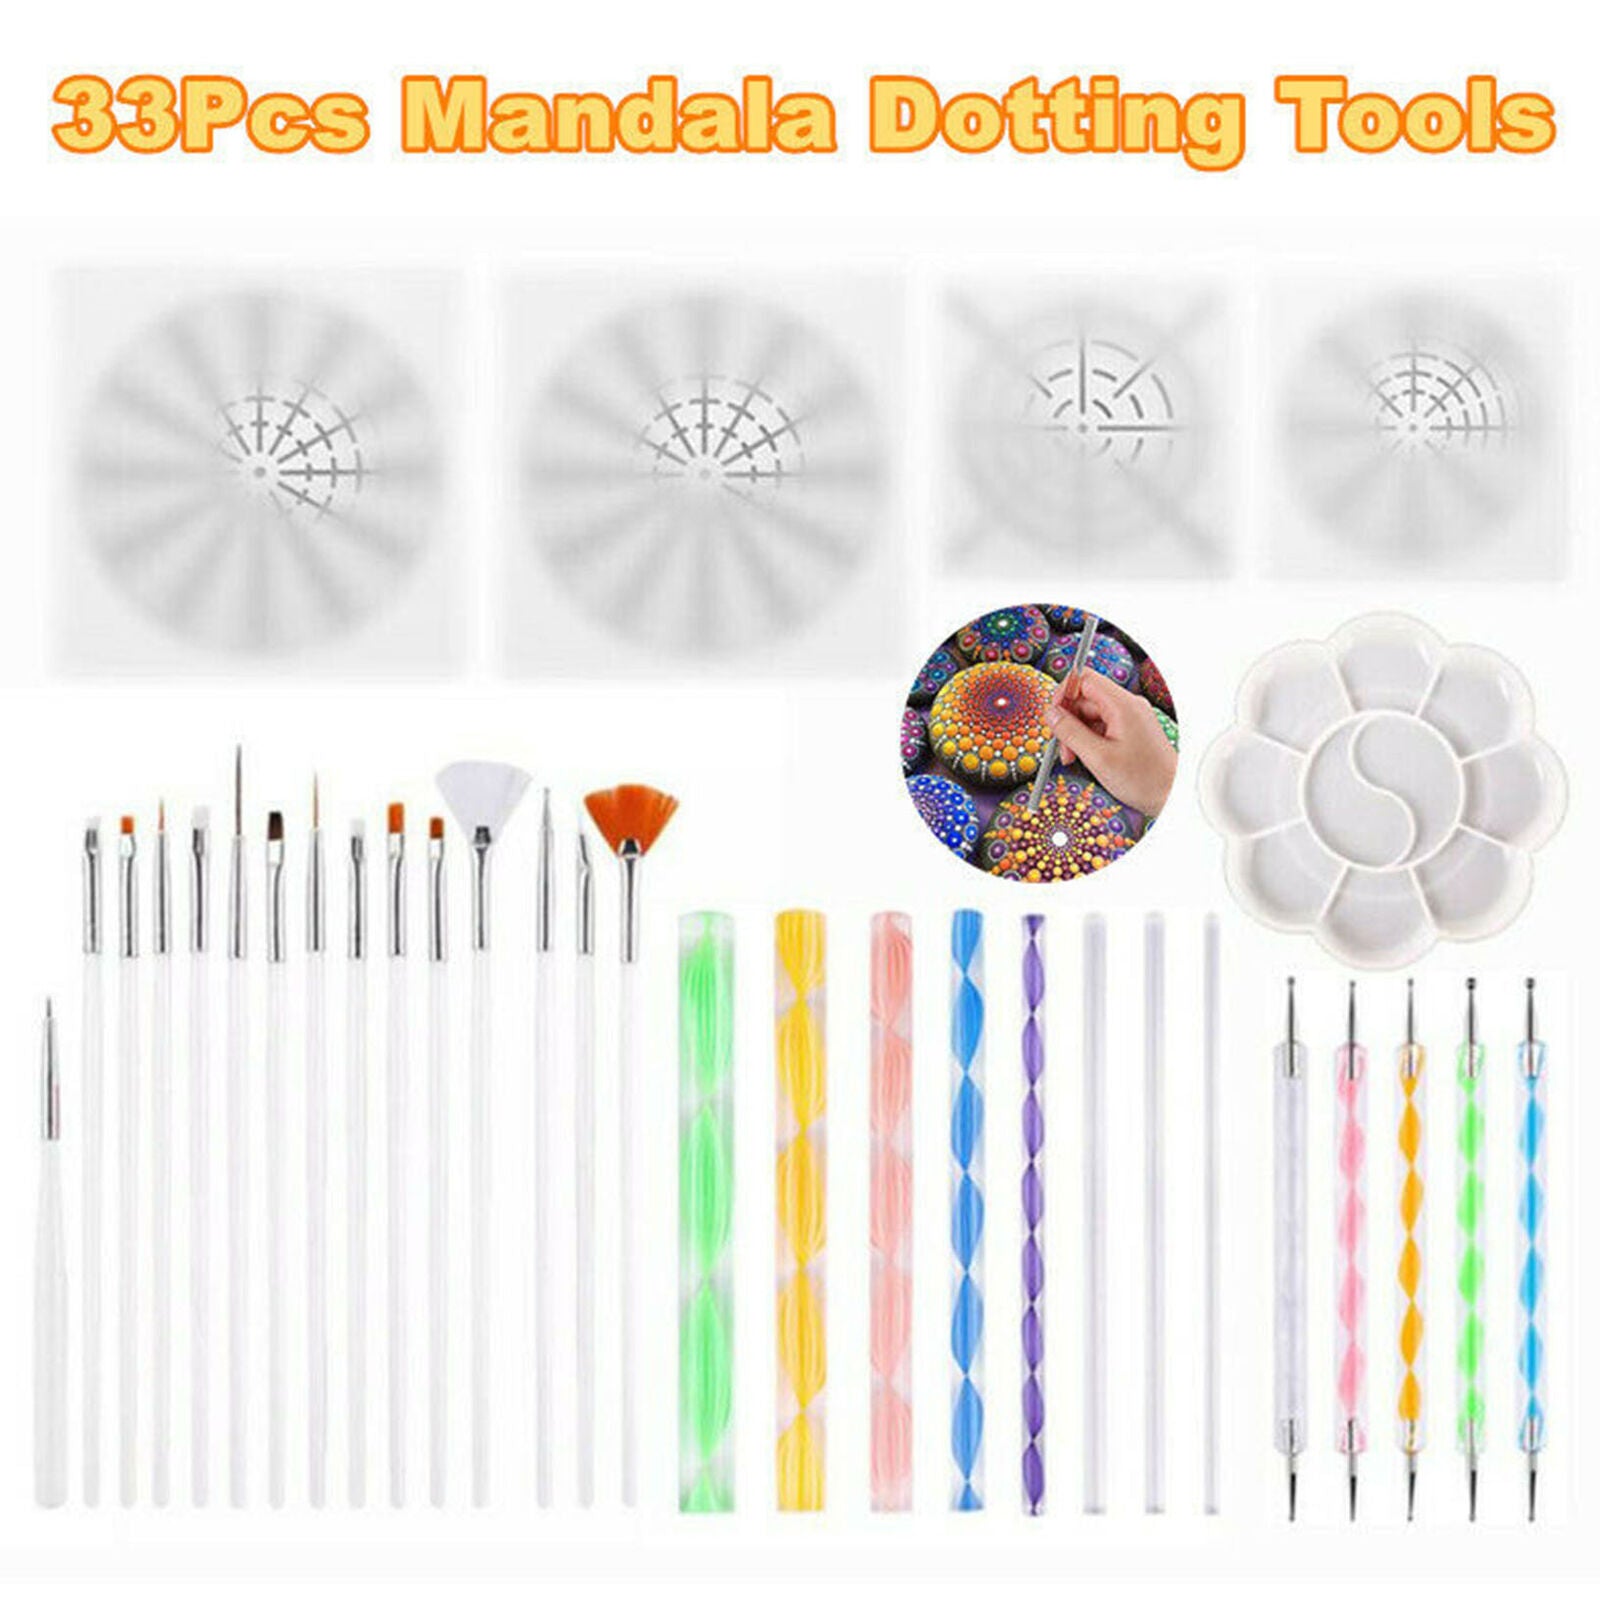 33PCS Mandala Dotting Tools for Rock Painting Kit Dot Art Rock Pen Paint Stencil